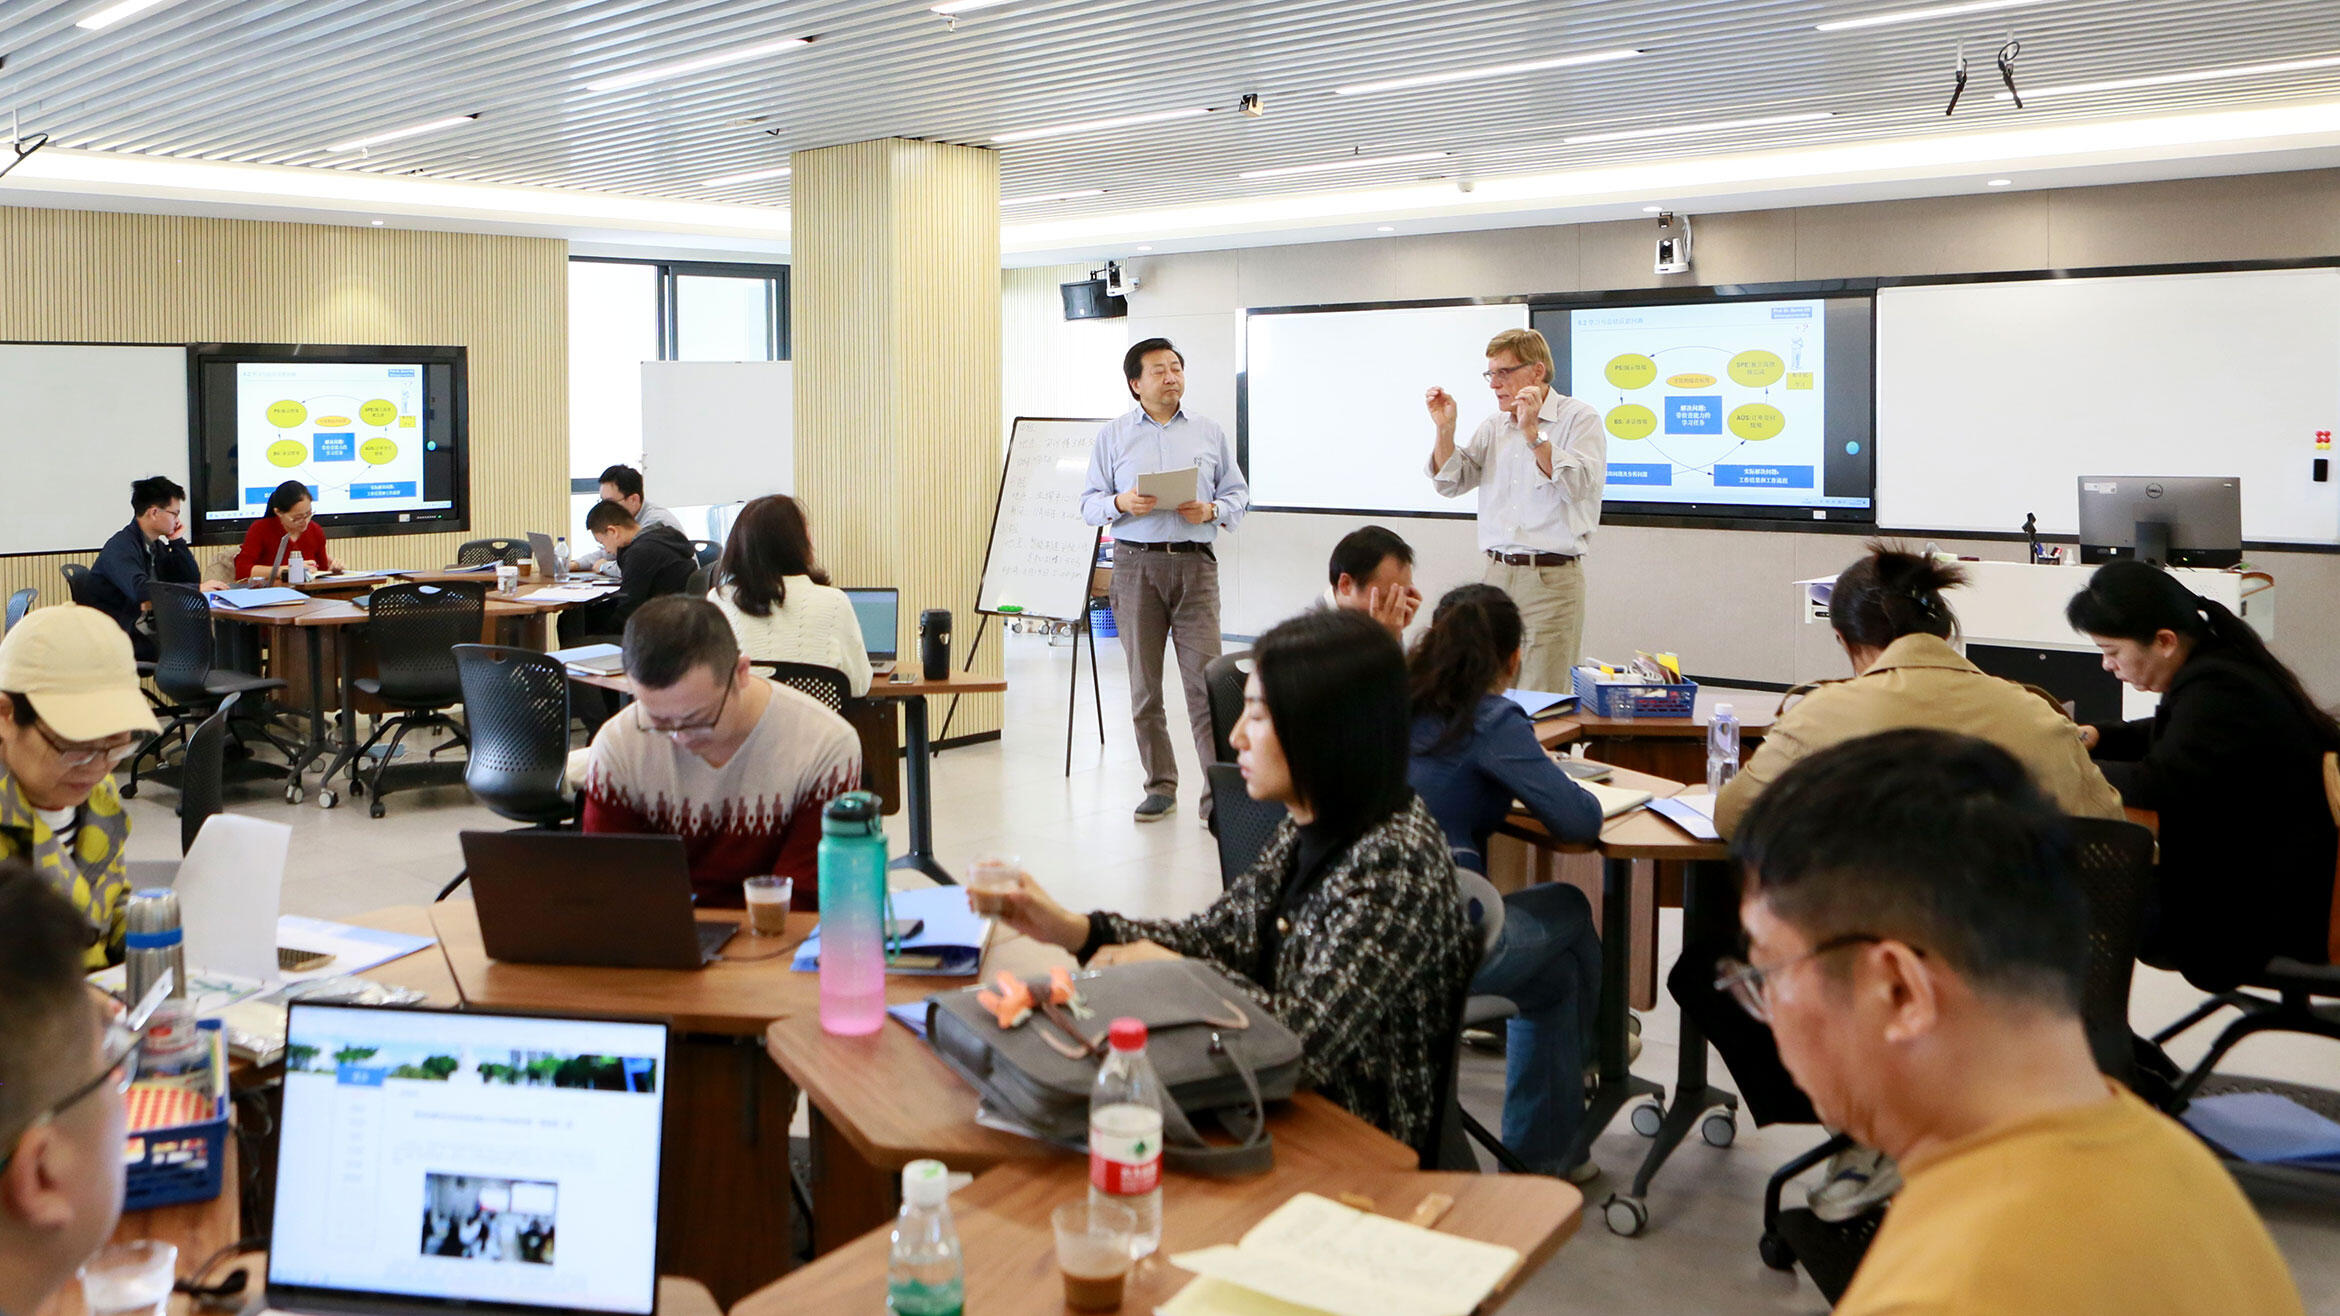 Blick in einen Unterrichtsraum, in dem Chinesinnen und Chinesen in Gruppen sitzen